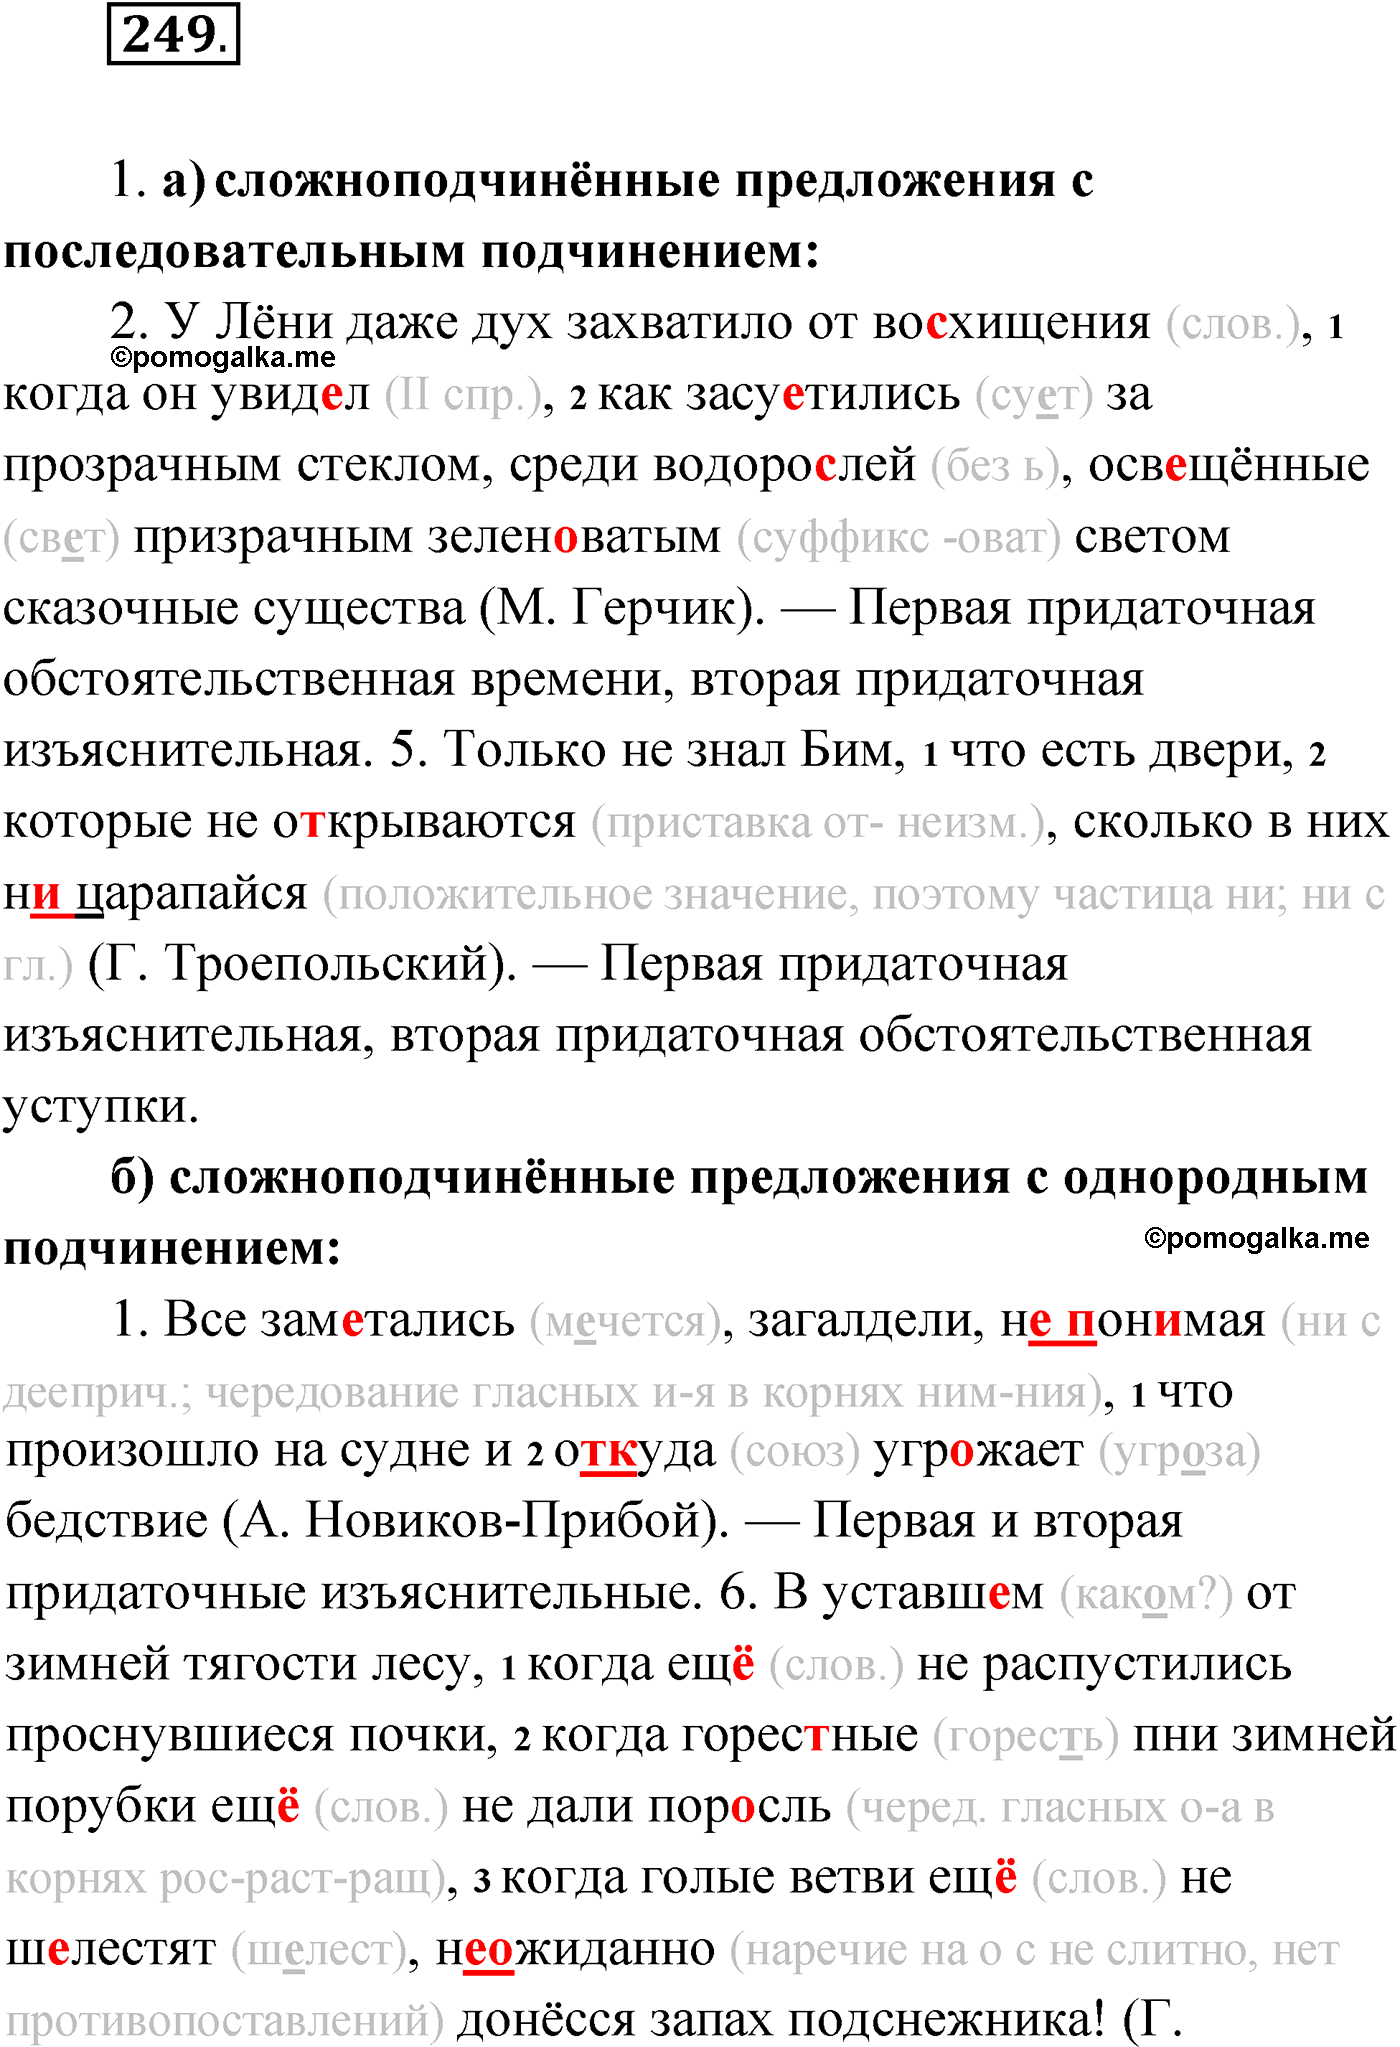 упражнение №249 русский язык 9 класс Мурина 2019 год